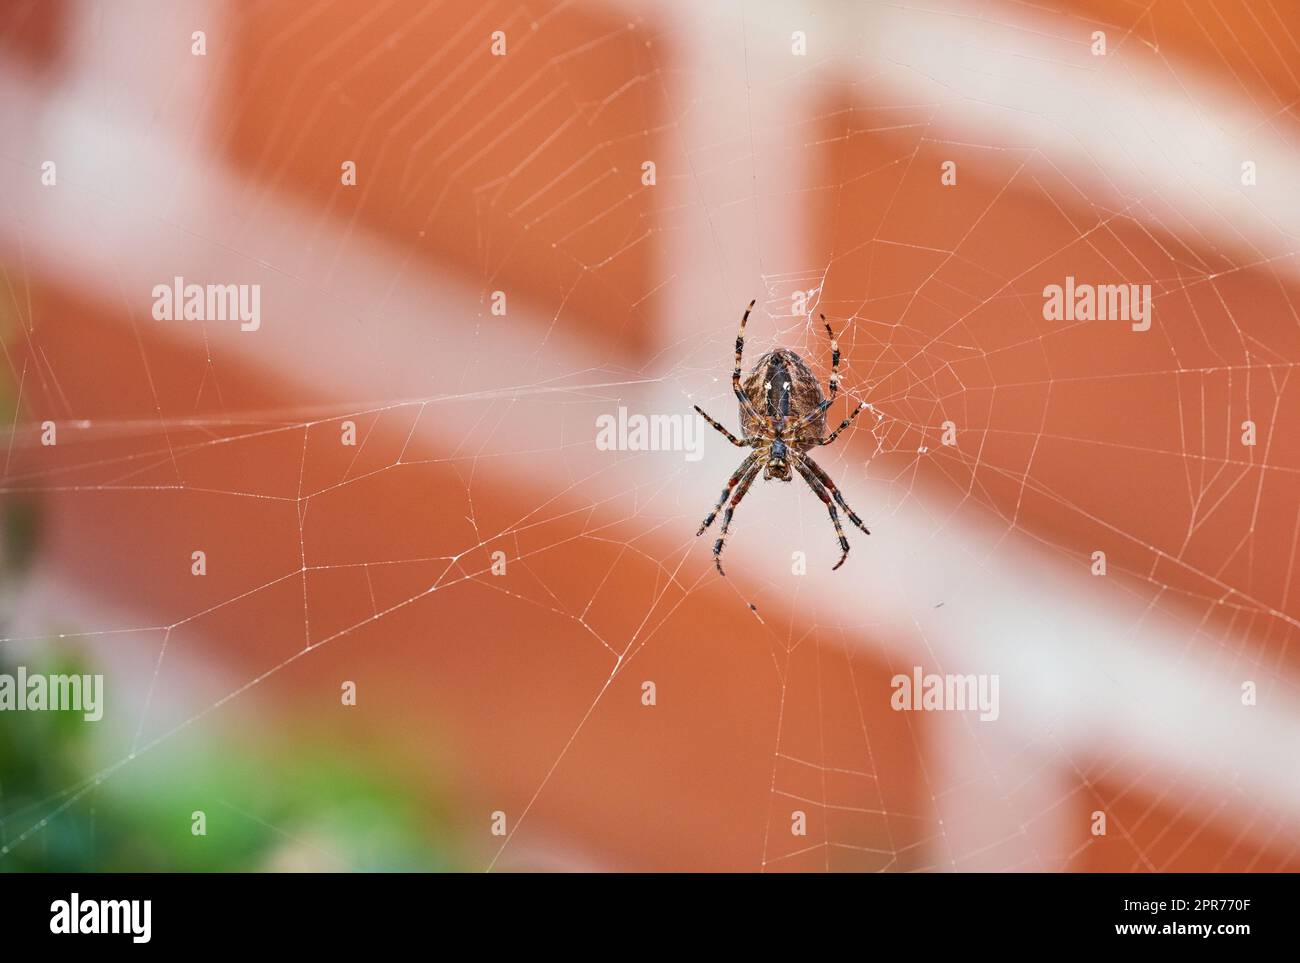 Une araignée de tisserand brun de noyer sur son web par en dessous, sur fond flou de maison de brique rouge. Arachnide noir rayé au centre de sa toile d'araignée. Le nuctenea umbratica est un insecte bénéfique Banque D'Images